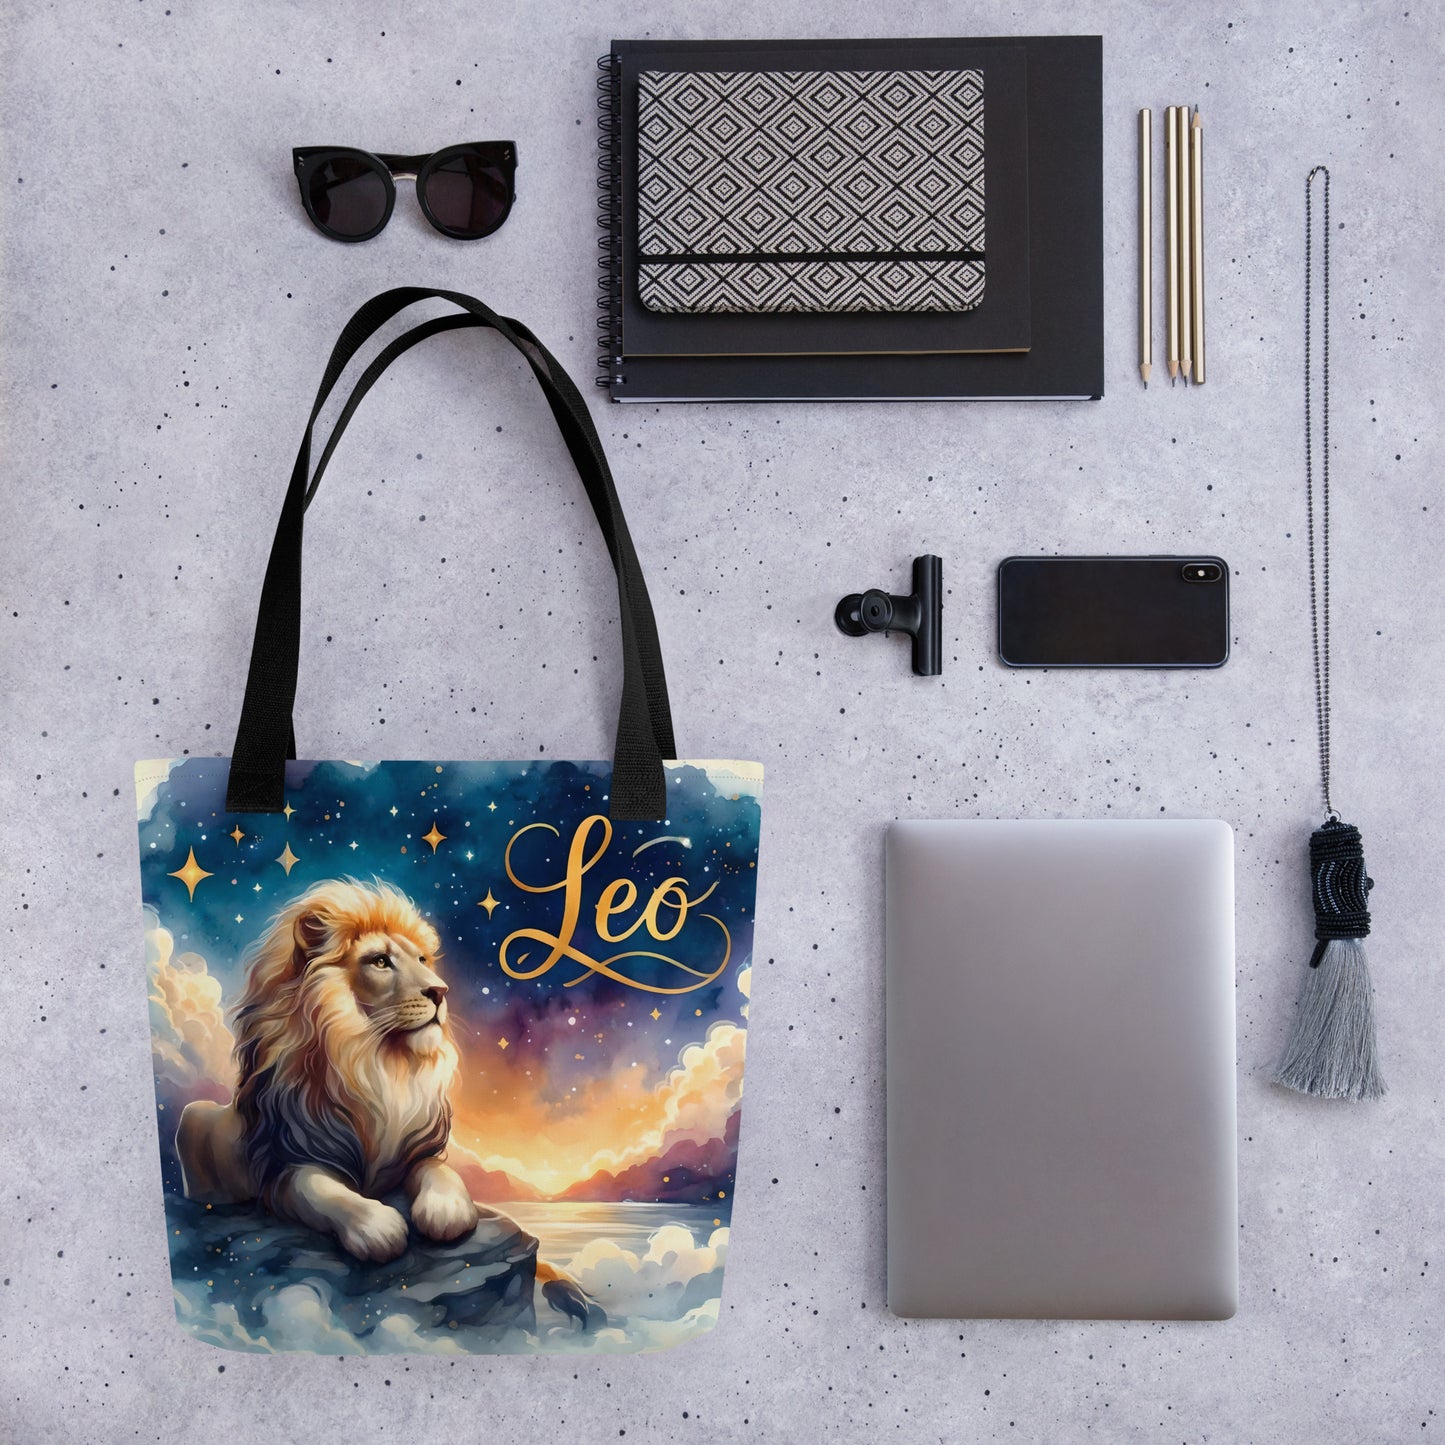 Leo Horoscope Tote Bag